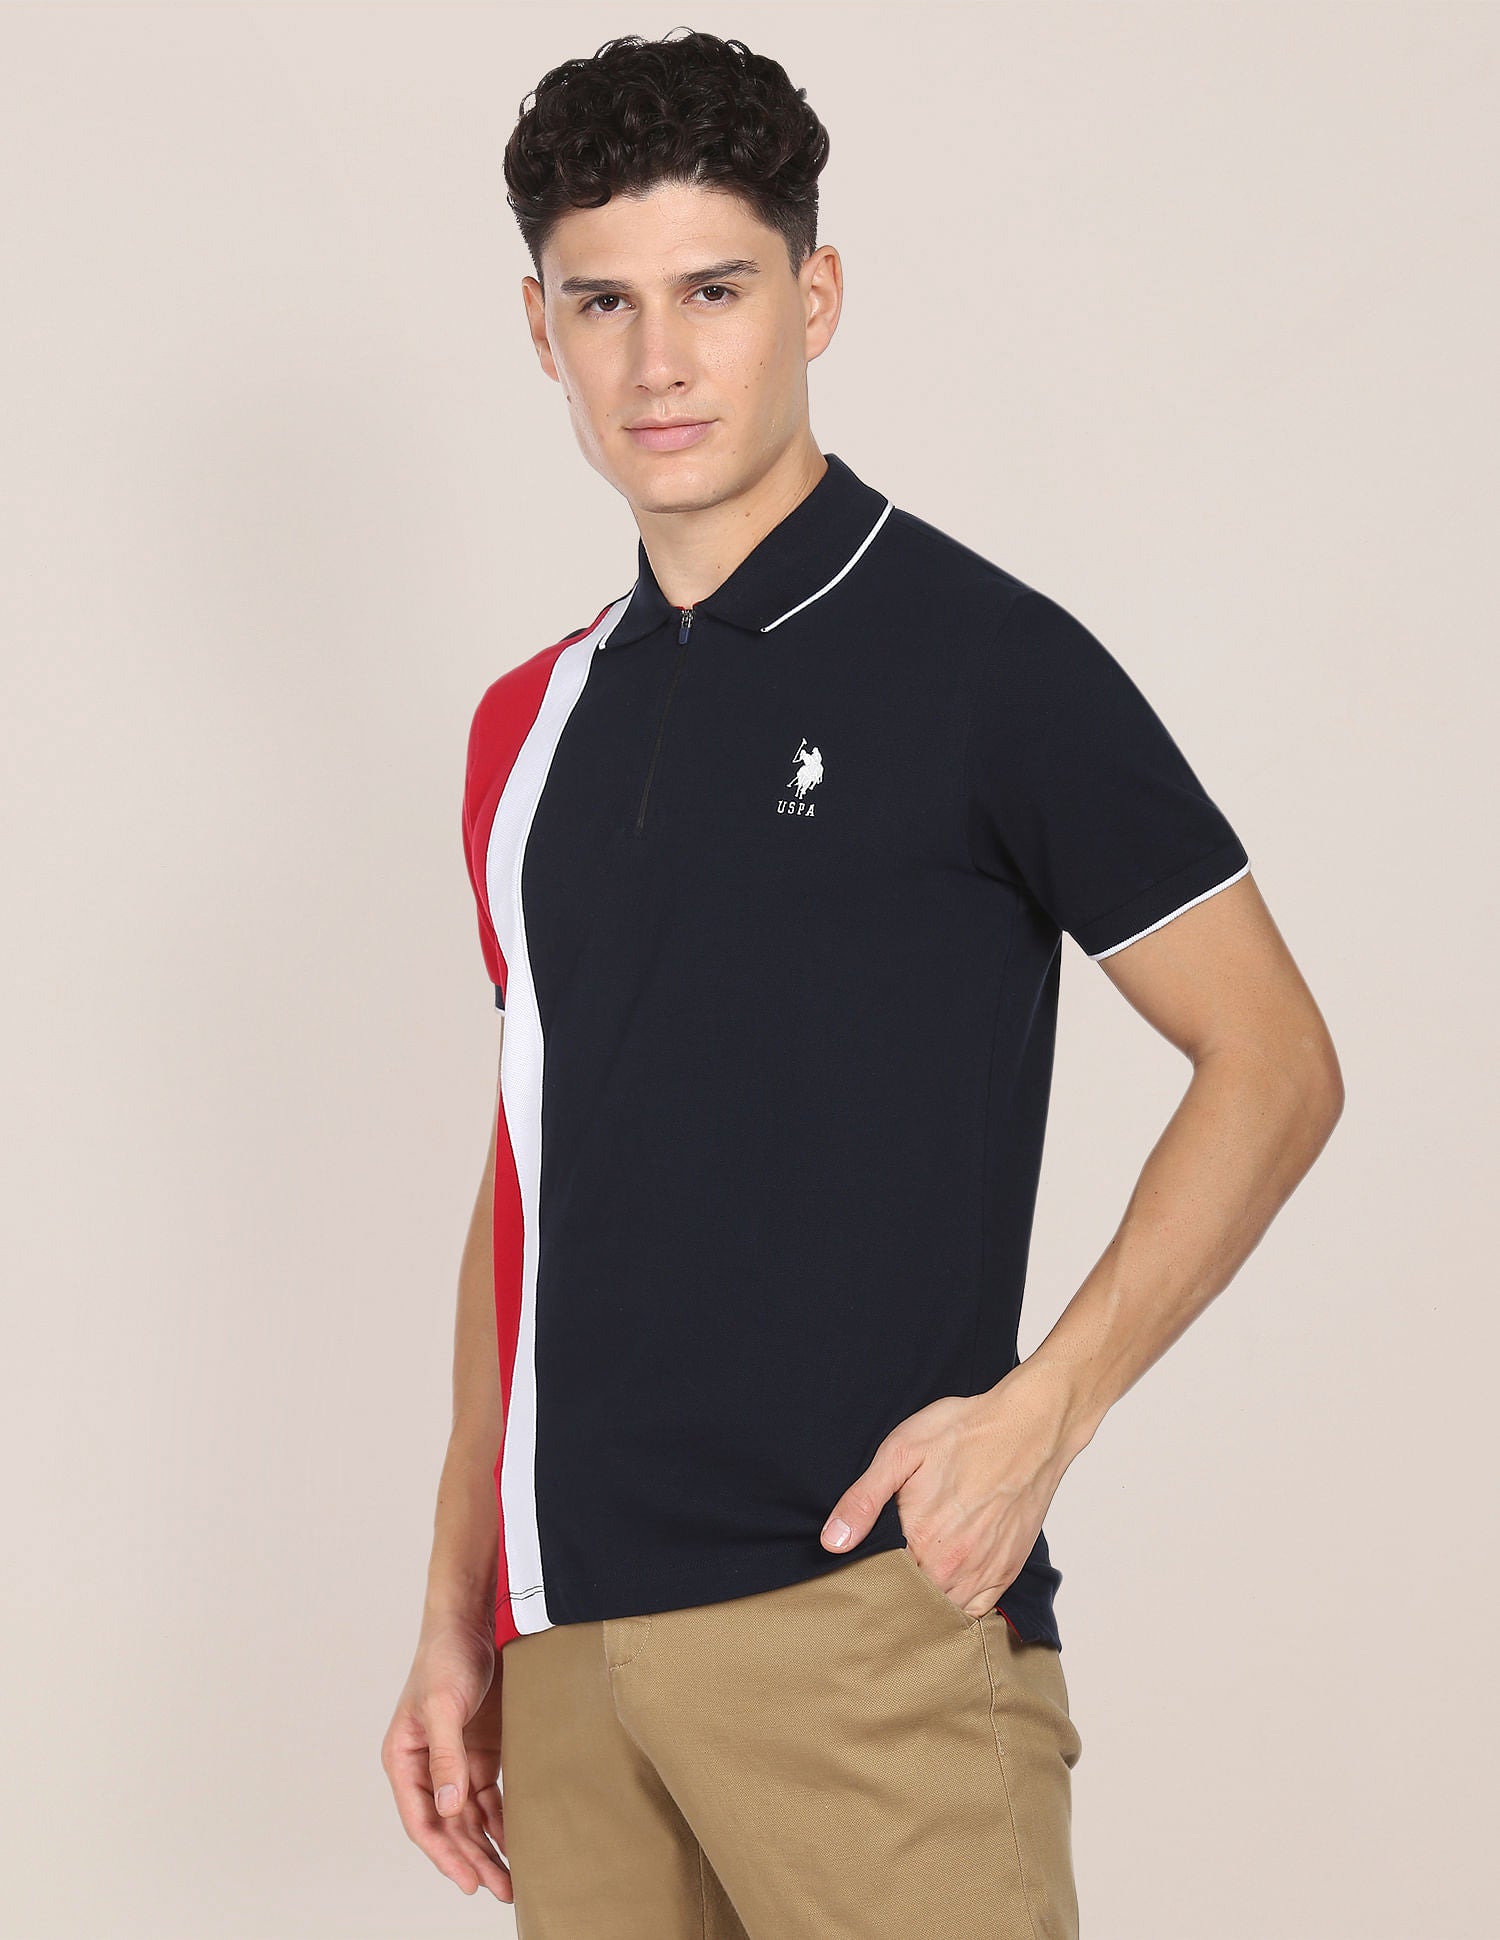 Colour Block Zipper Polo Shirt – U.S. Polo Assn. India